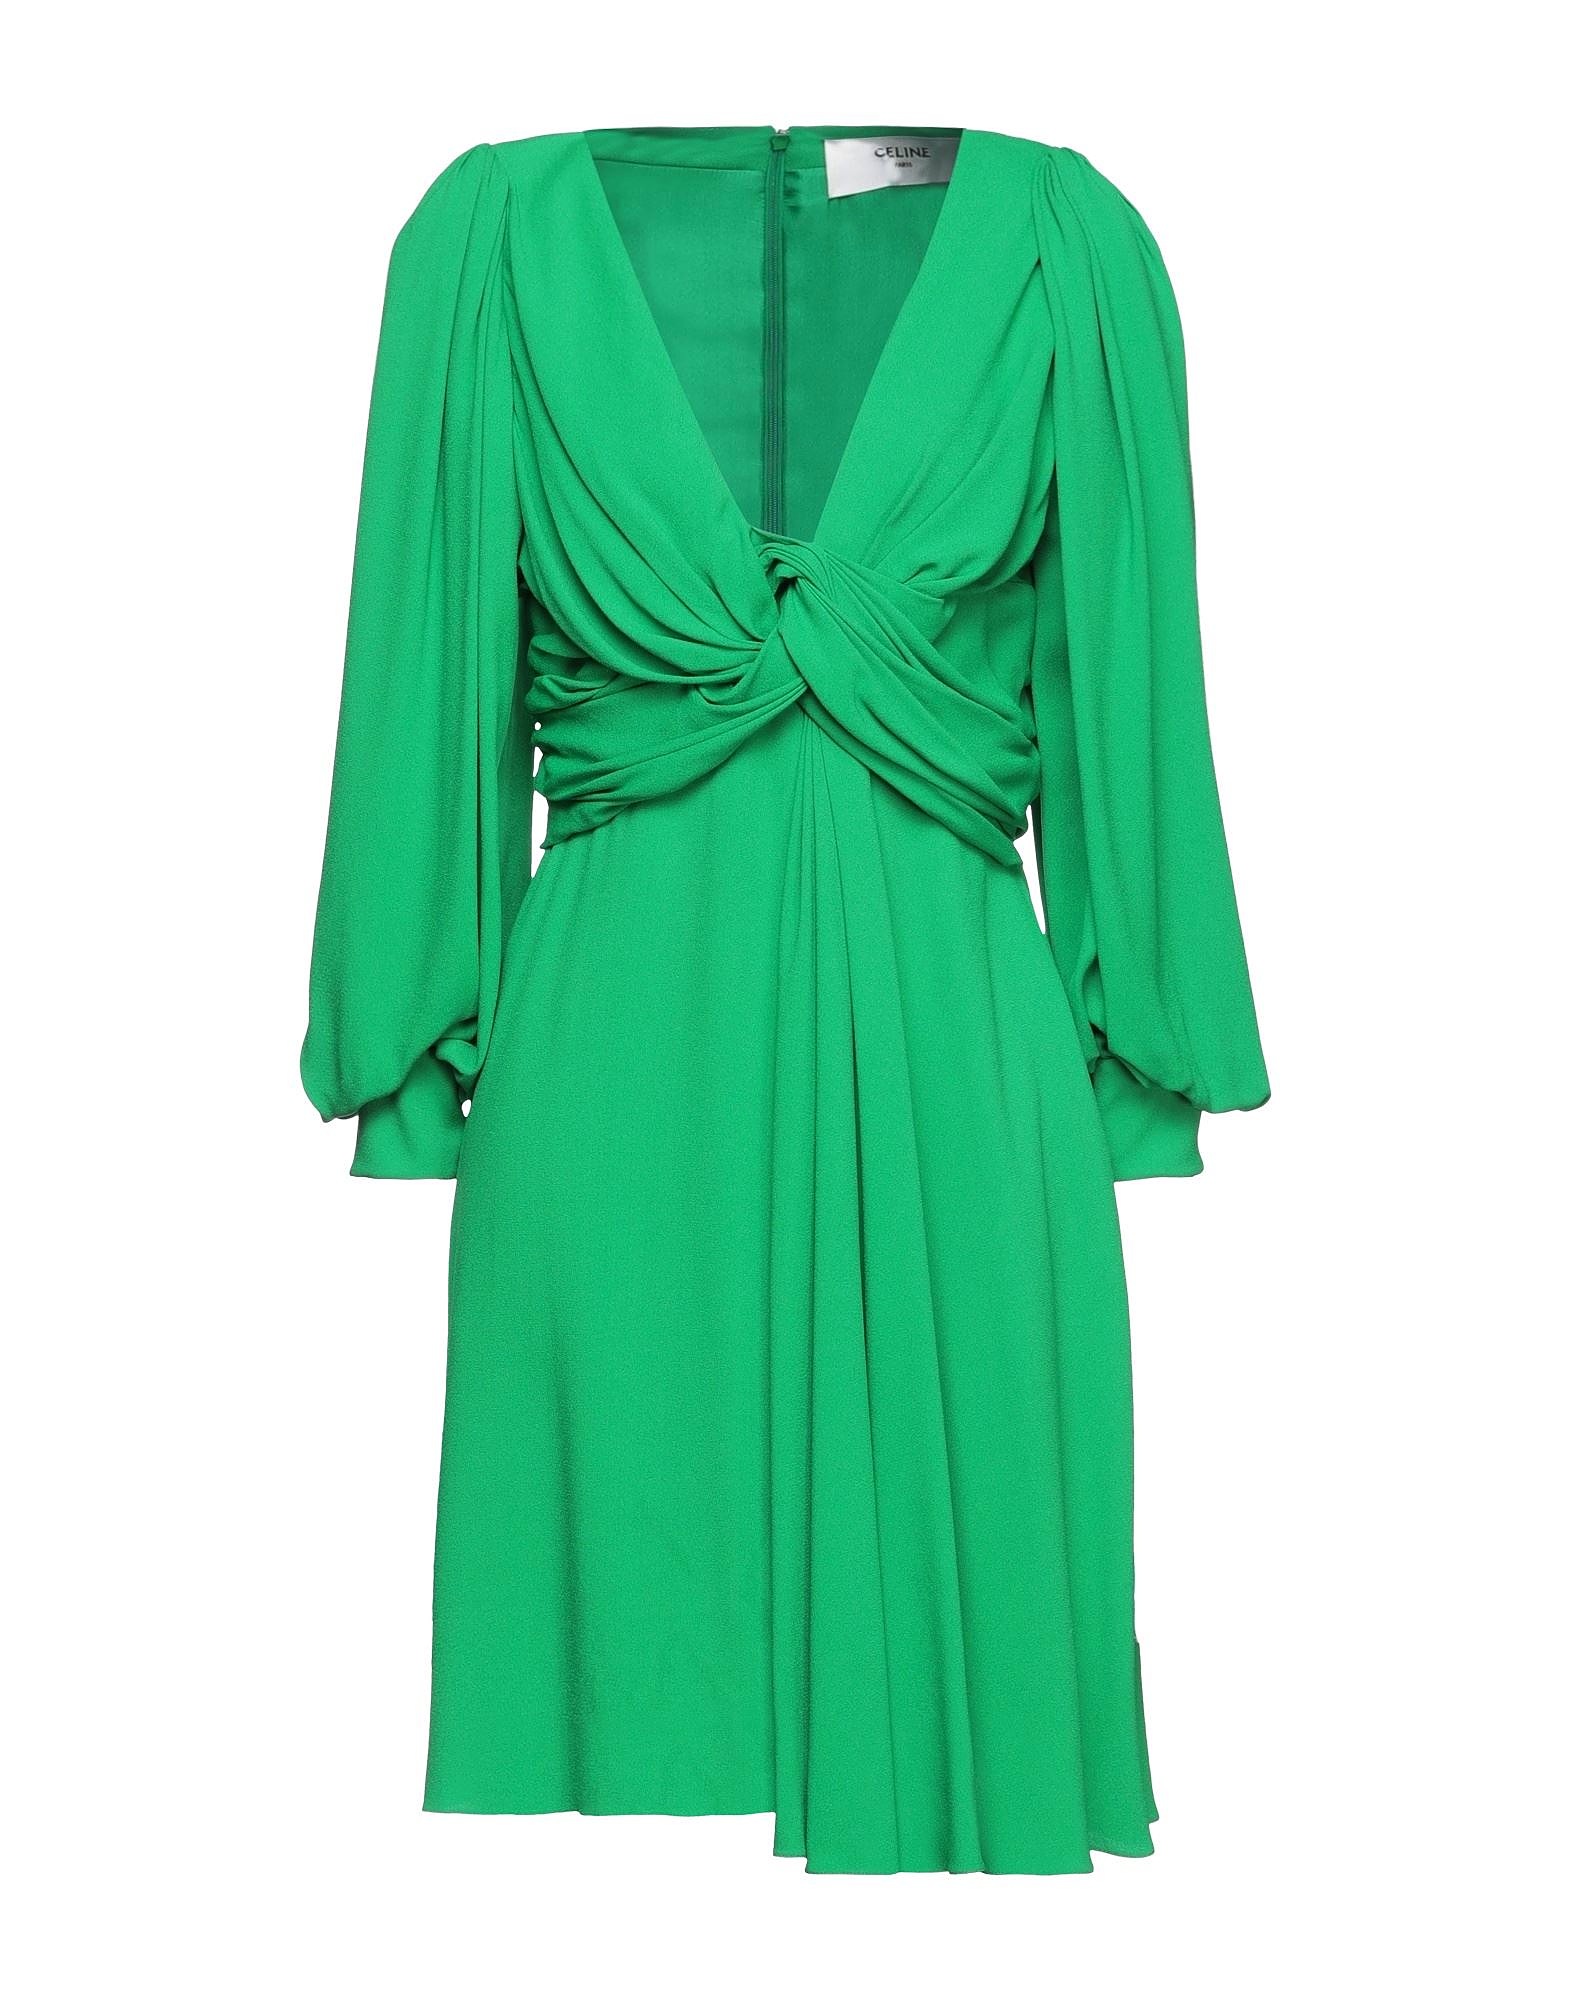 Платье короткое Celine, зеленый летний женский повседневный костюм двойка с оборками и v образным вырезом